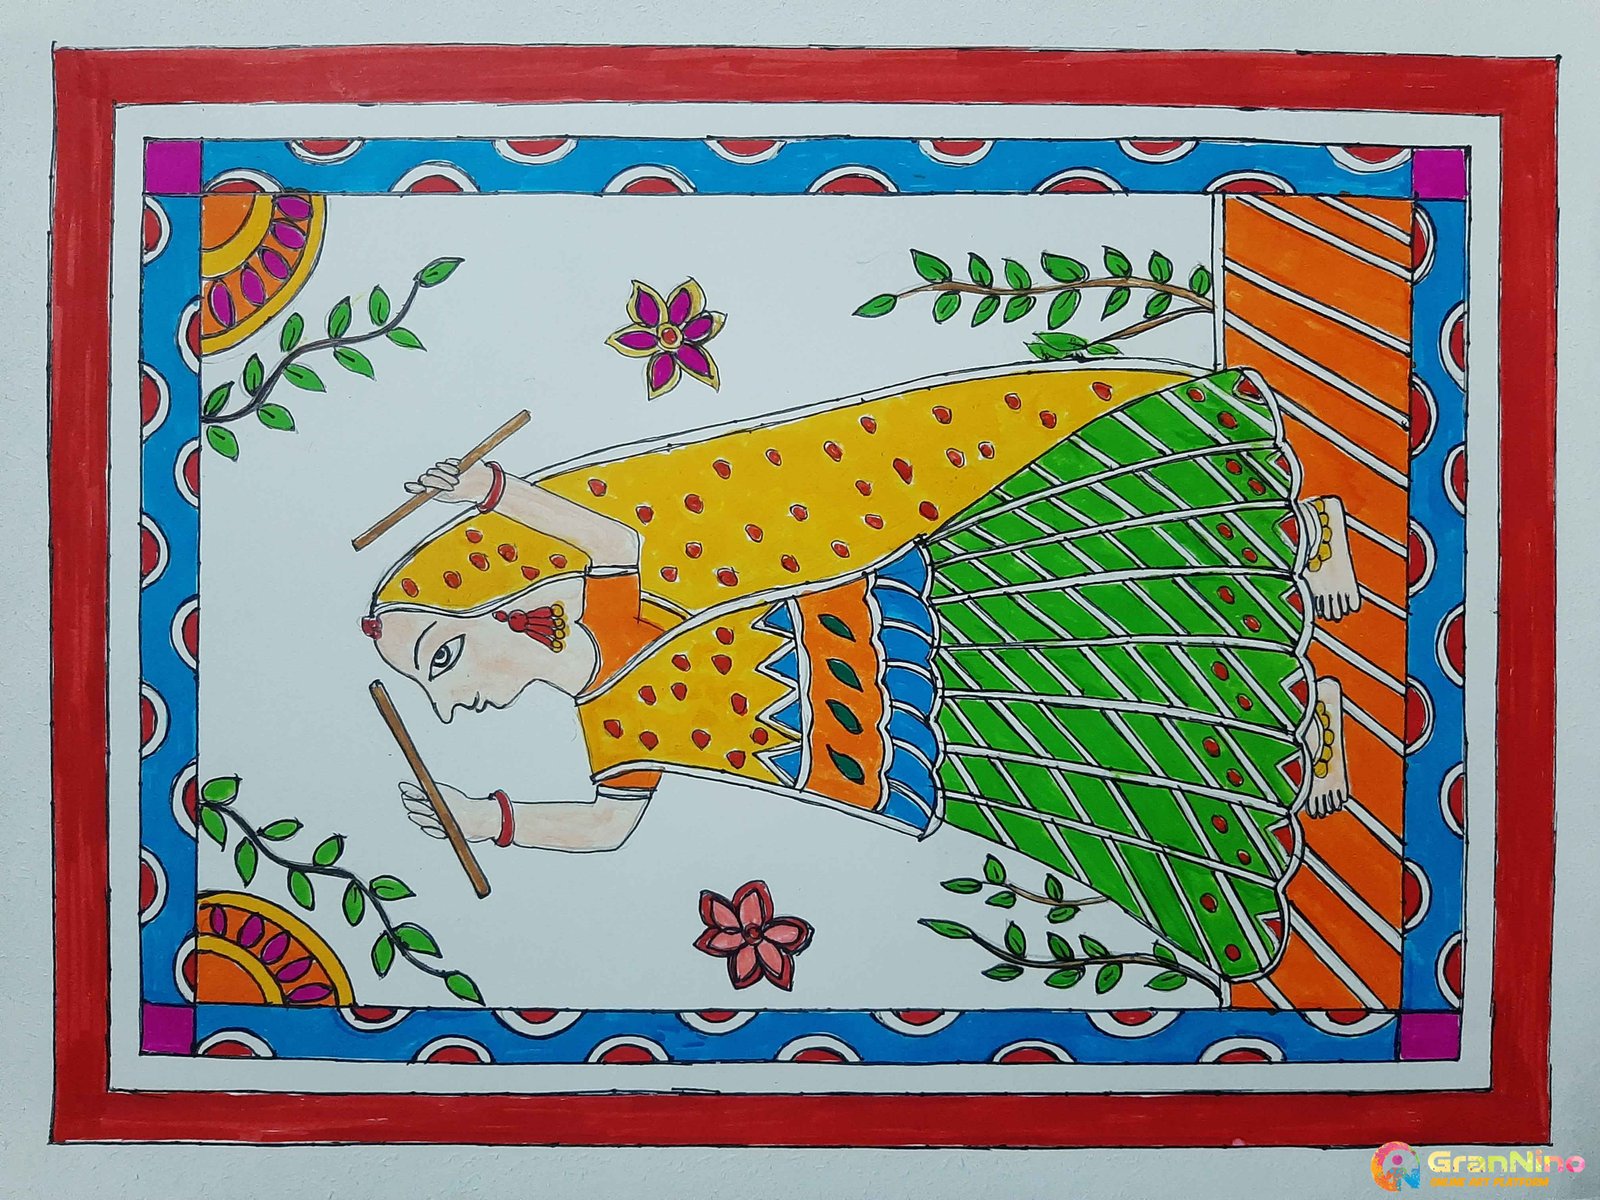 Madhubani/Mithila Painting: Indian folk: Intermediate Level | Udemy